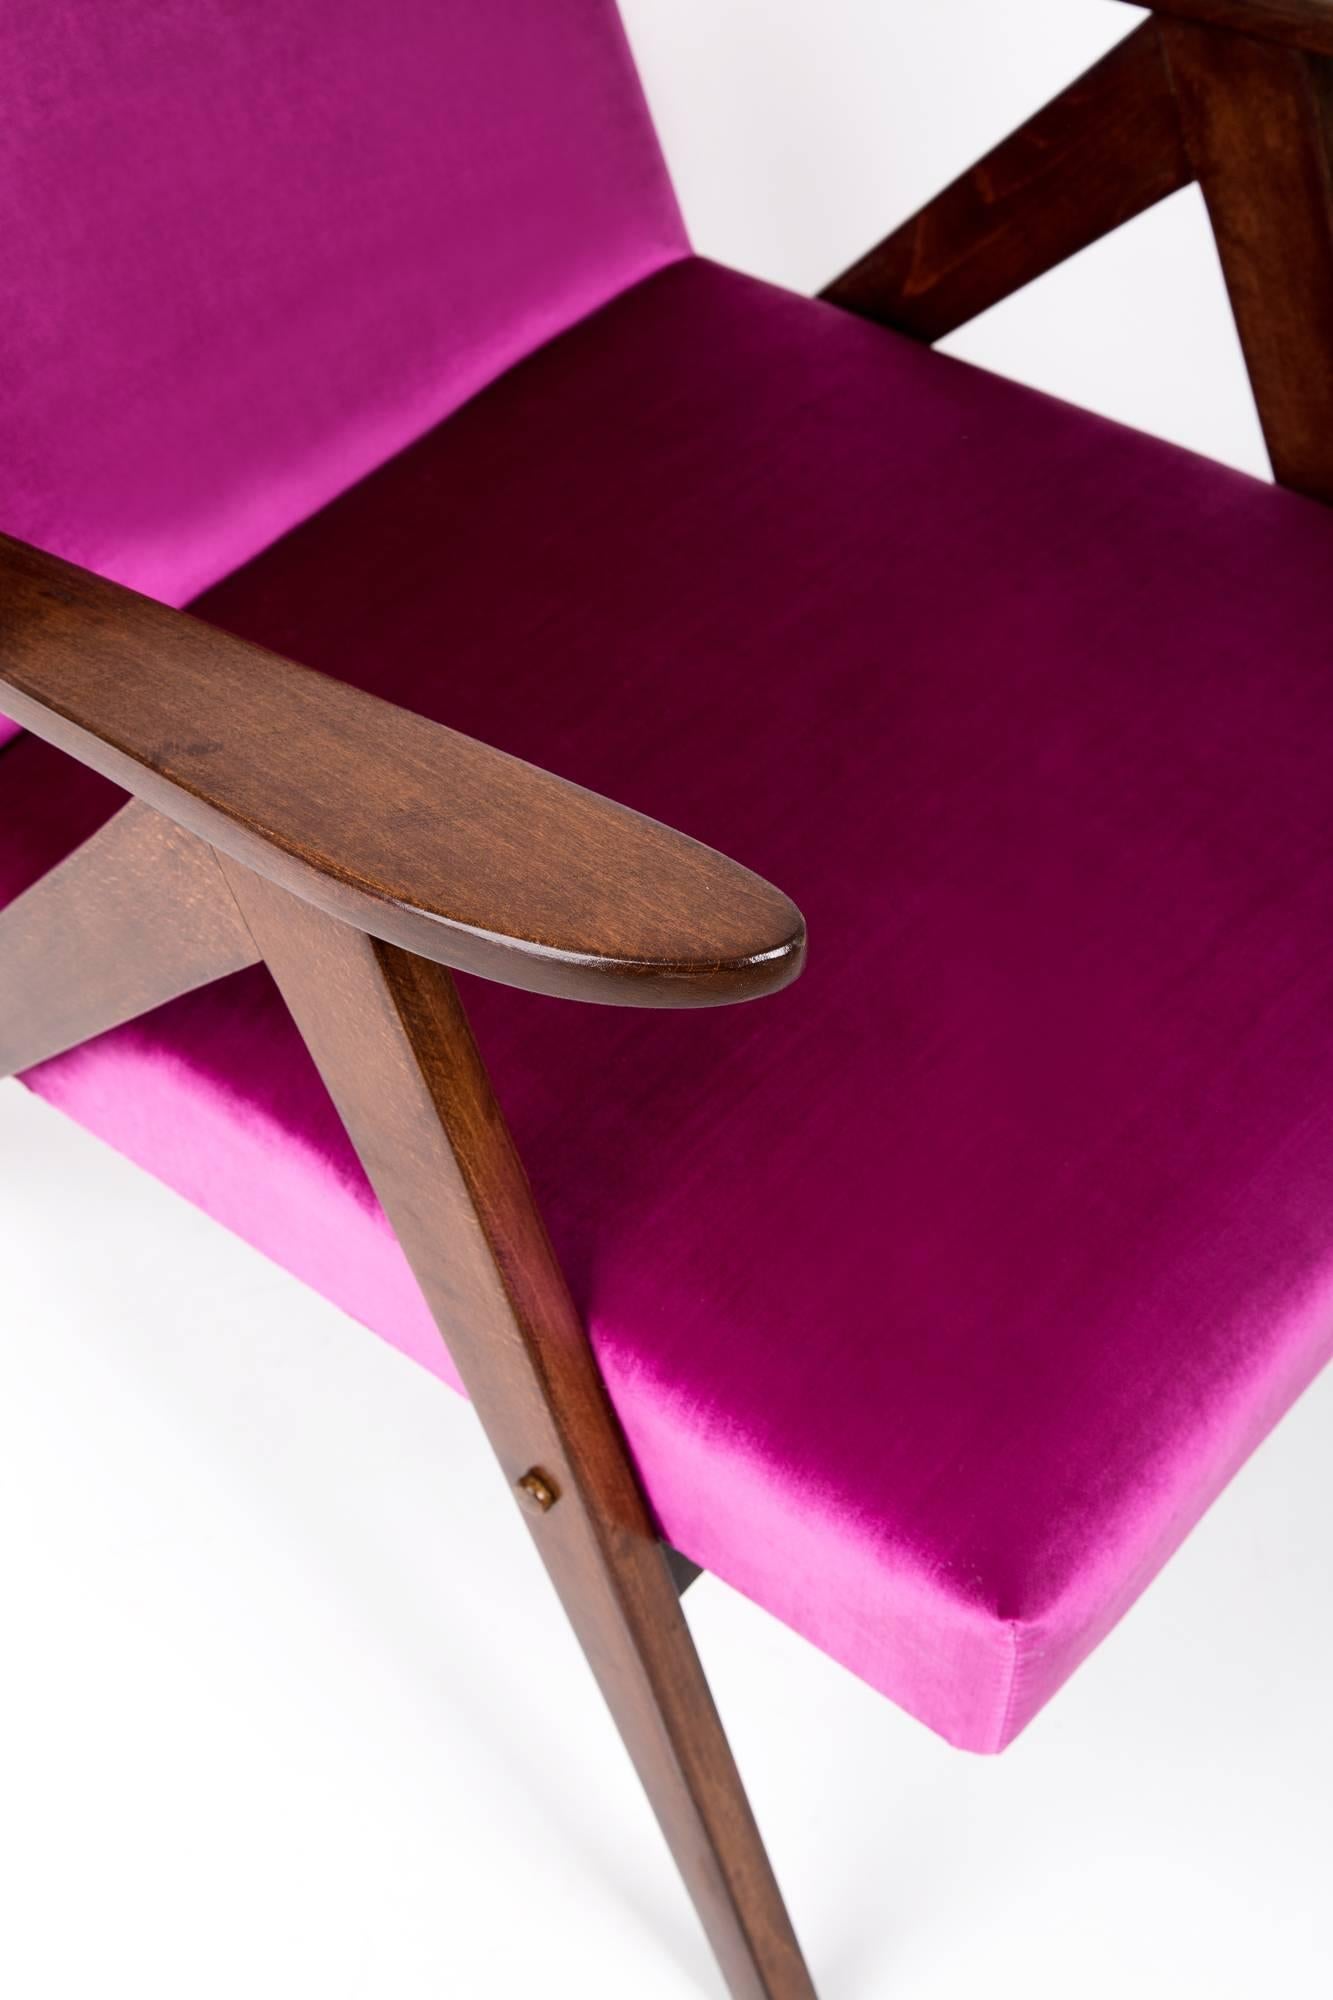 Der polnische Sessel wurde um die 1960er und 1970er Jahre in der Bending Furniture Factory in Radomsko hergestellt. Es handelt sich um eine limitierte Auflage, die mit dem B-310 VAR-Symbol versehen ist. Der Sessel wurde nach einer umfassenden